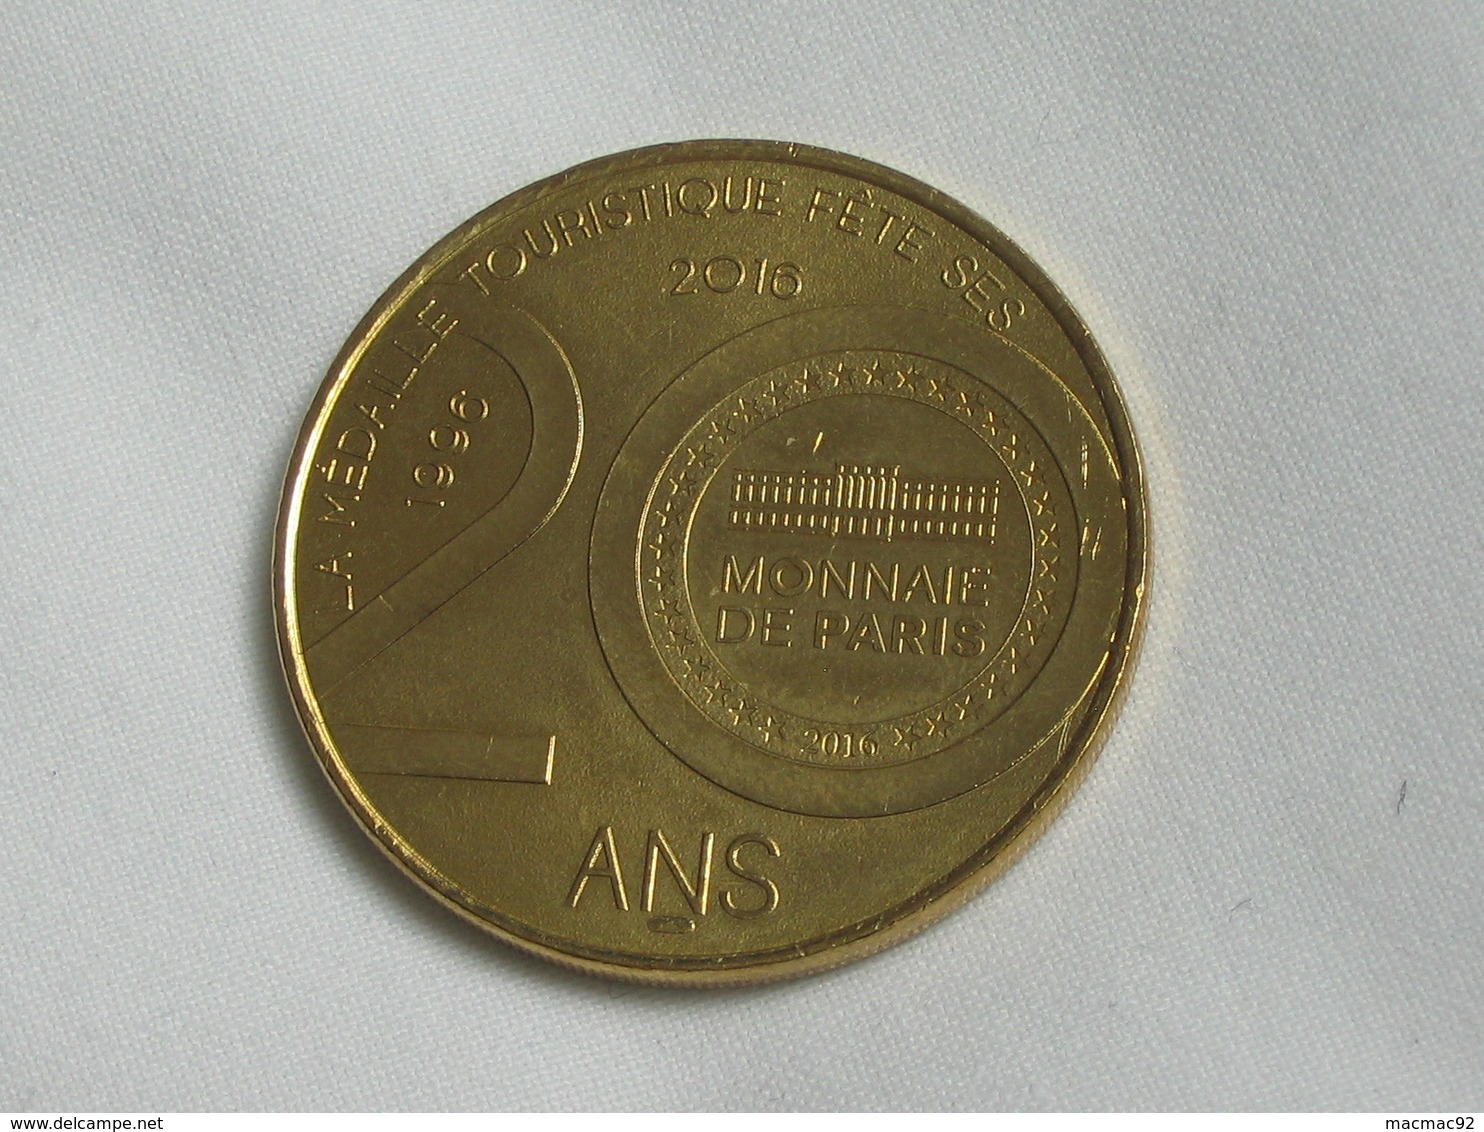 Monnaie De Paris Fete Ses 20 Ans -MONUMENT AUX GIRONDINS - BORDEAUX     **** EN ACHAT IMMEDIAT  **** - 2016